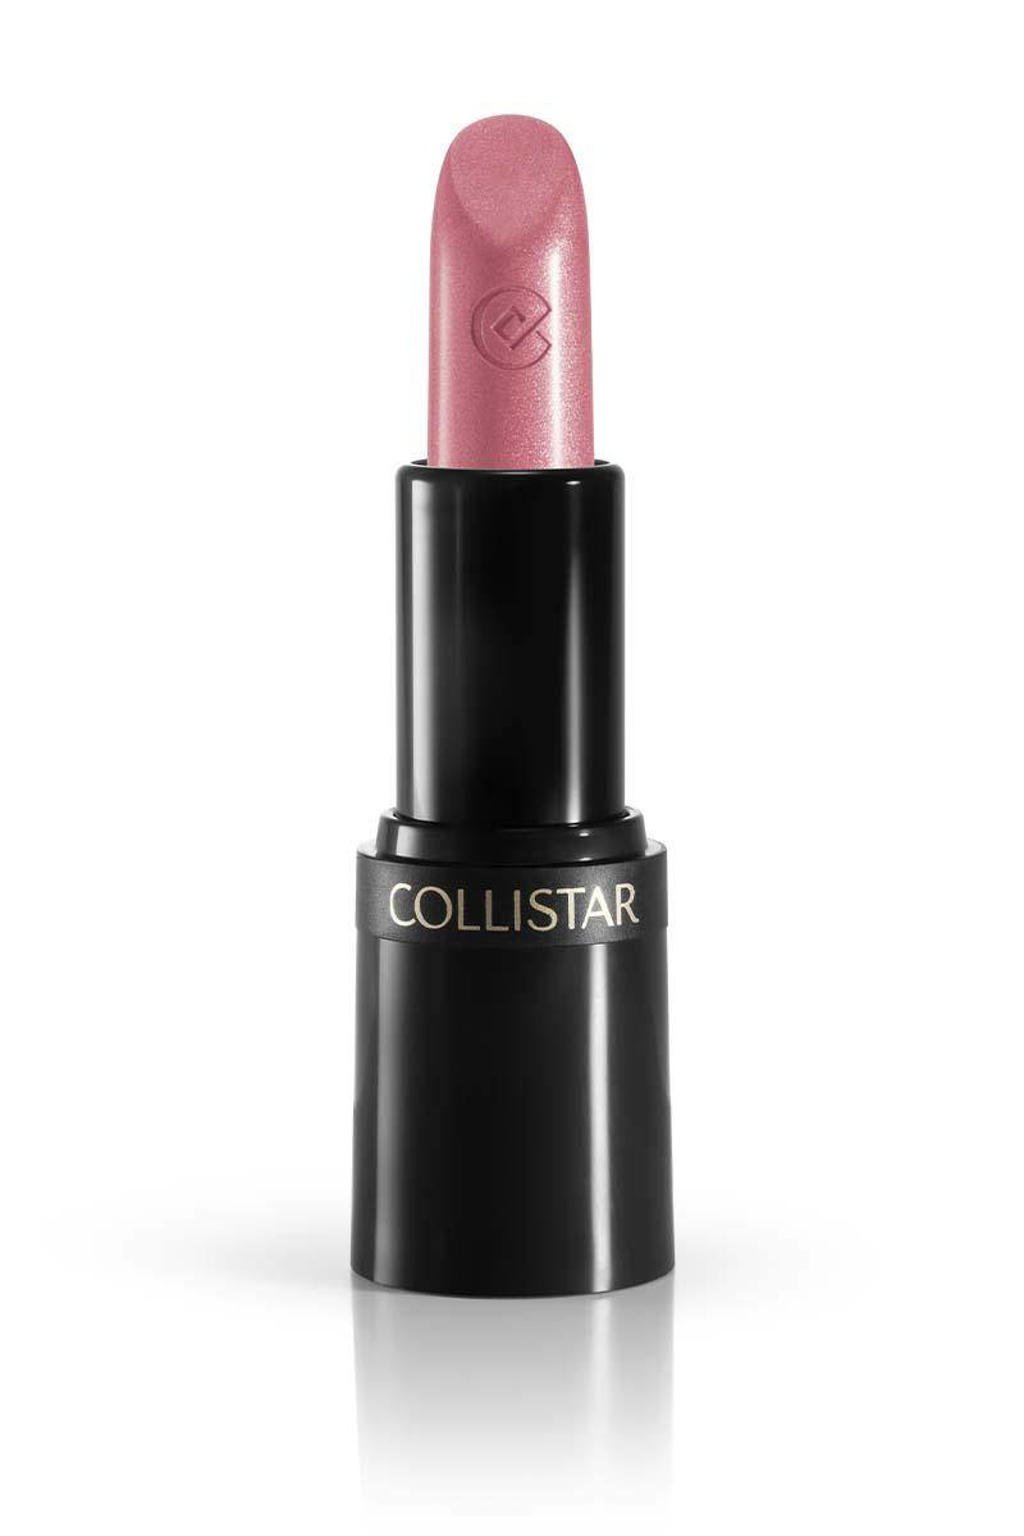 Collistar Puro lippenstift - 26 Rosa Metallo